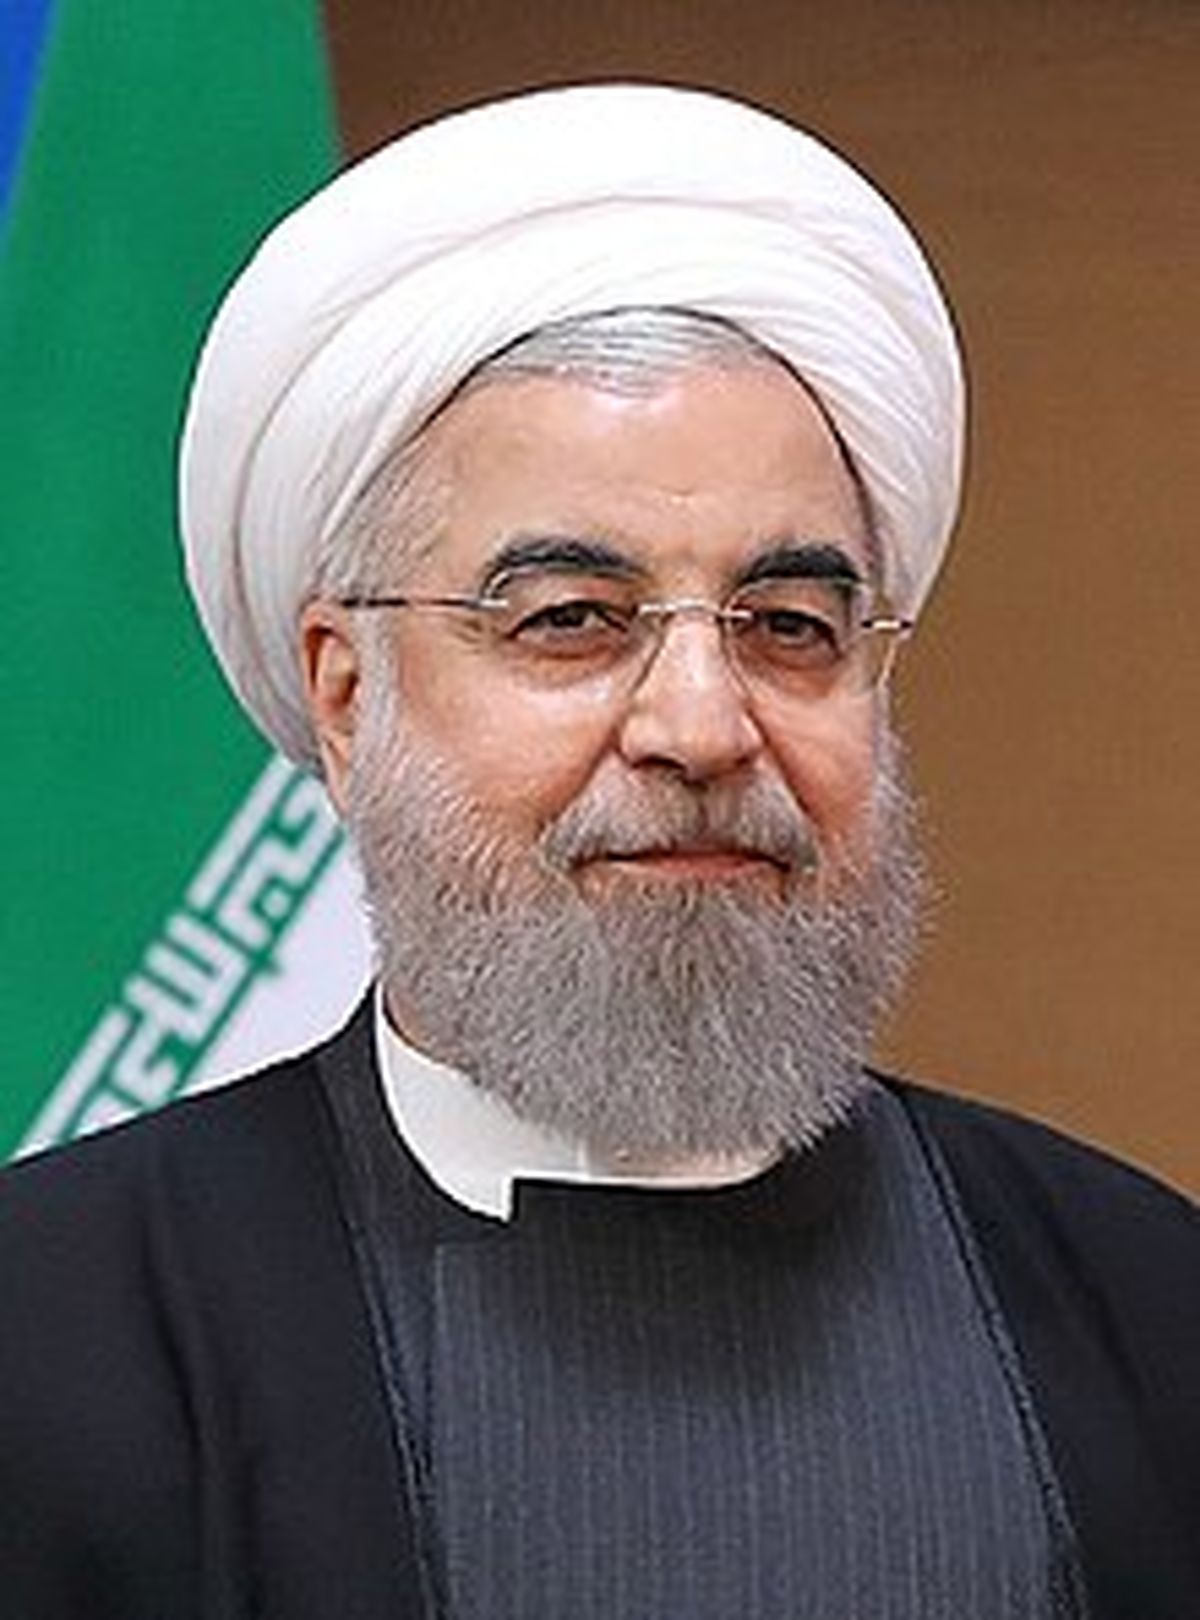 طرح حسن روحانی برای انتخابات مجلس خبرگان رهبری چیست؟